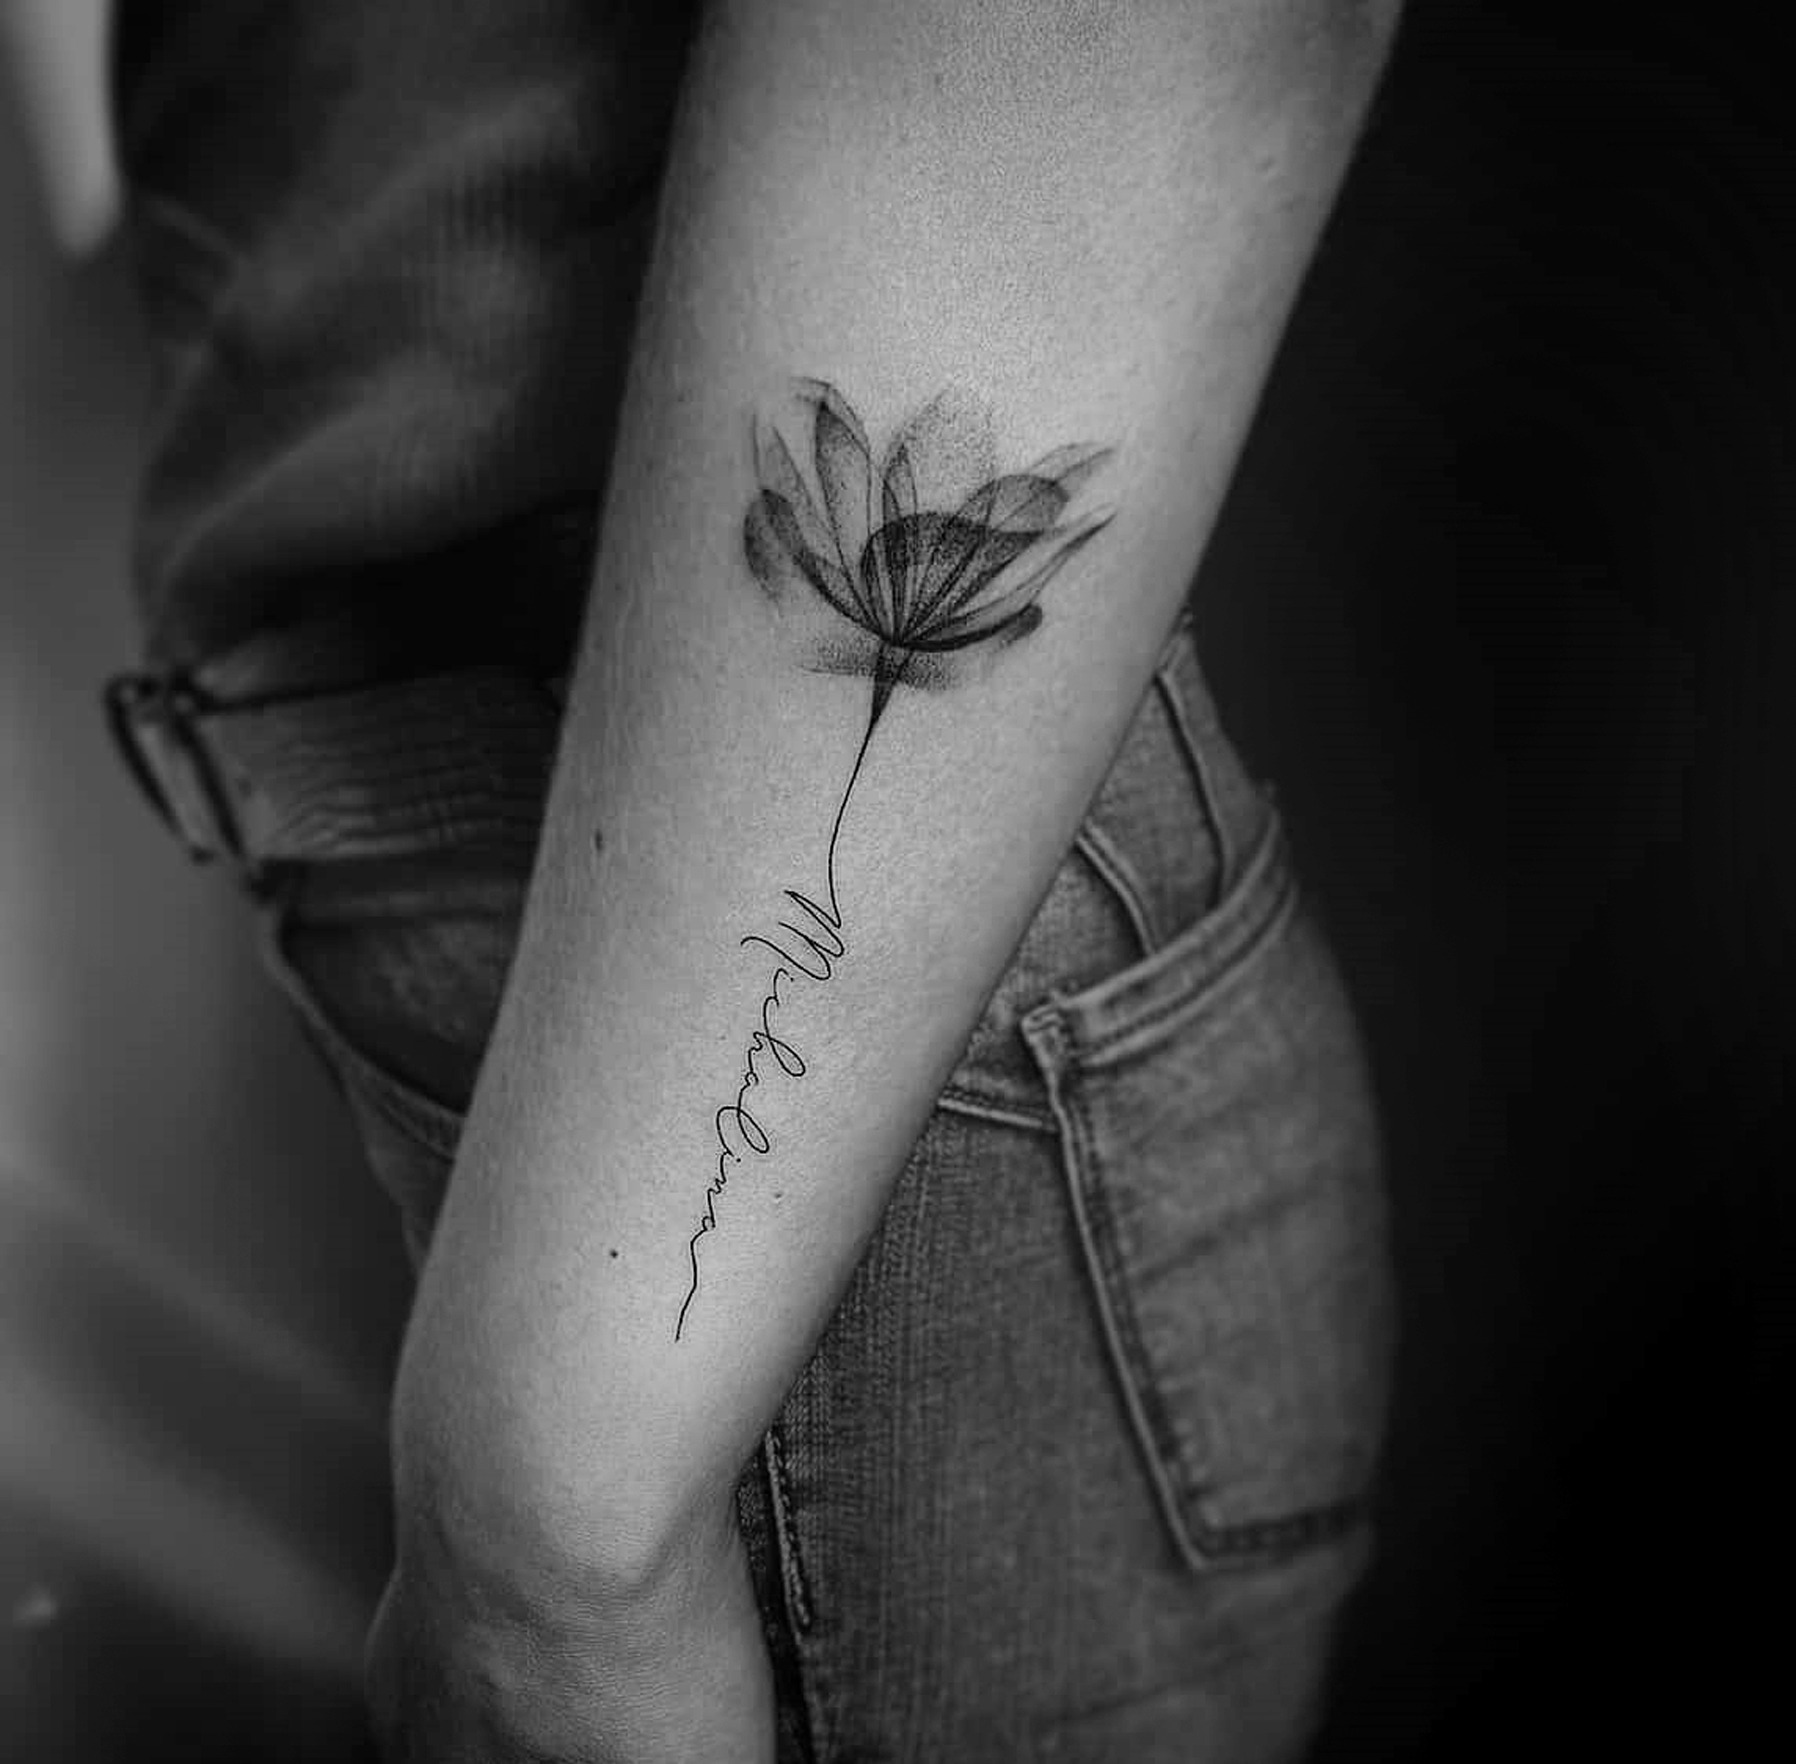 tatuaż kobiecy - napis przechodzący w kwiat